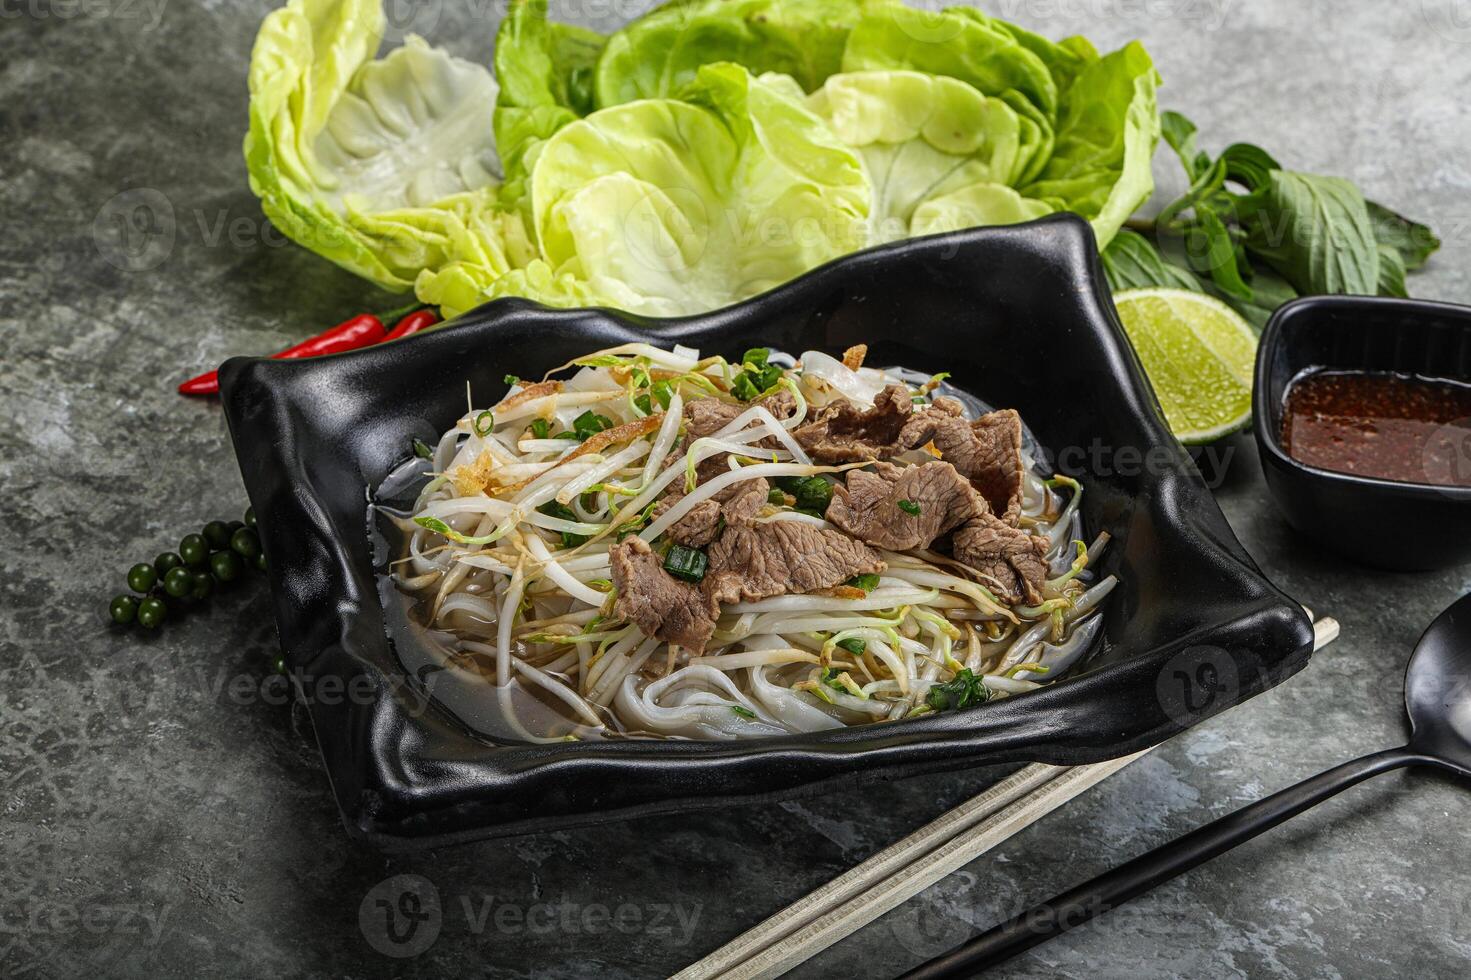 vietnamese traditionell soppa pho bo med nötkött foto